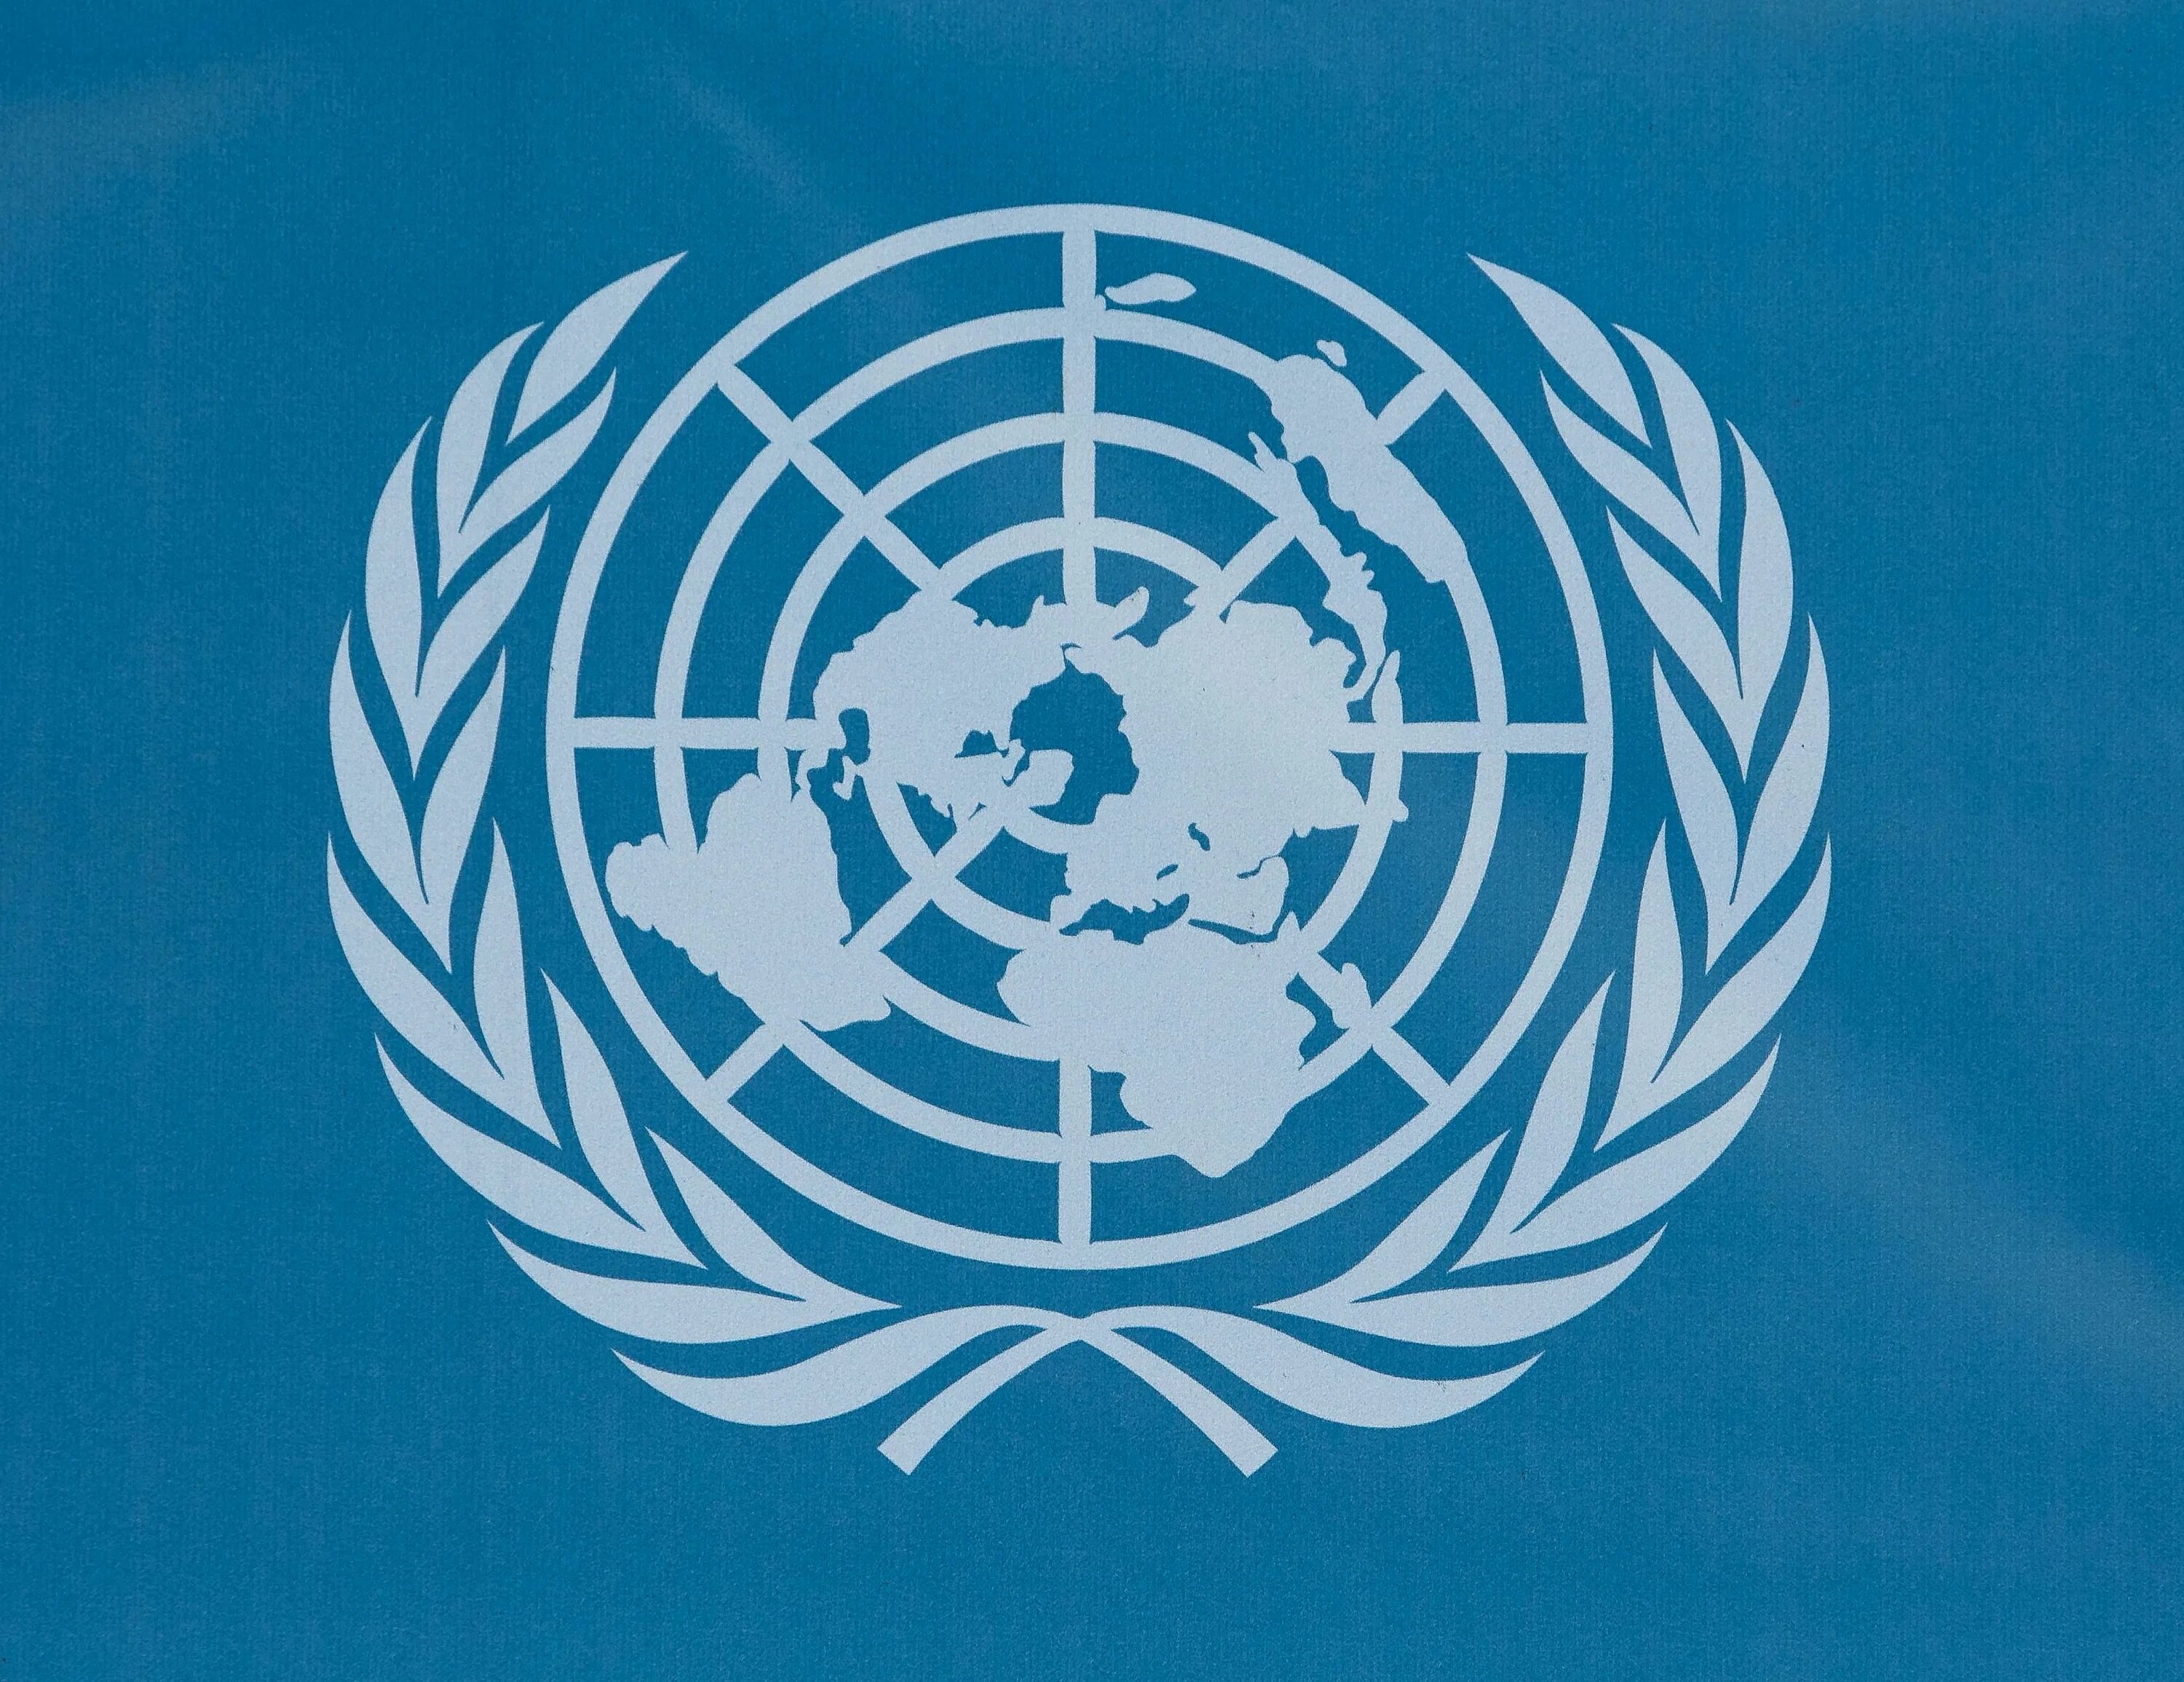 Организация Объединенных наций (ООН). Международные организации ООН. Oont. Организация Объединенных наций эмблема. Конвенция о гс